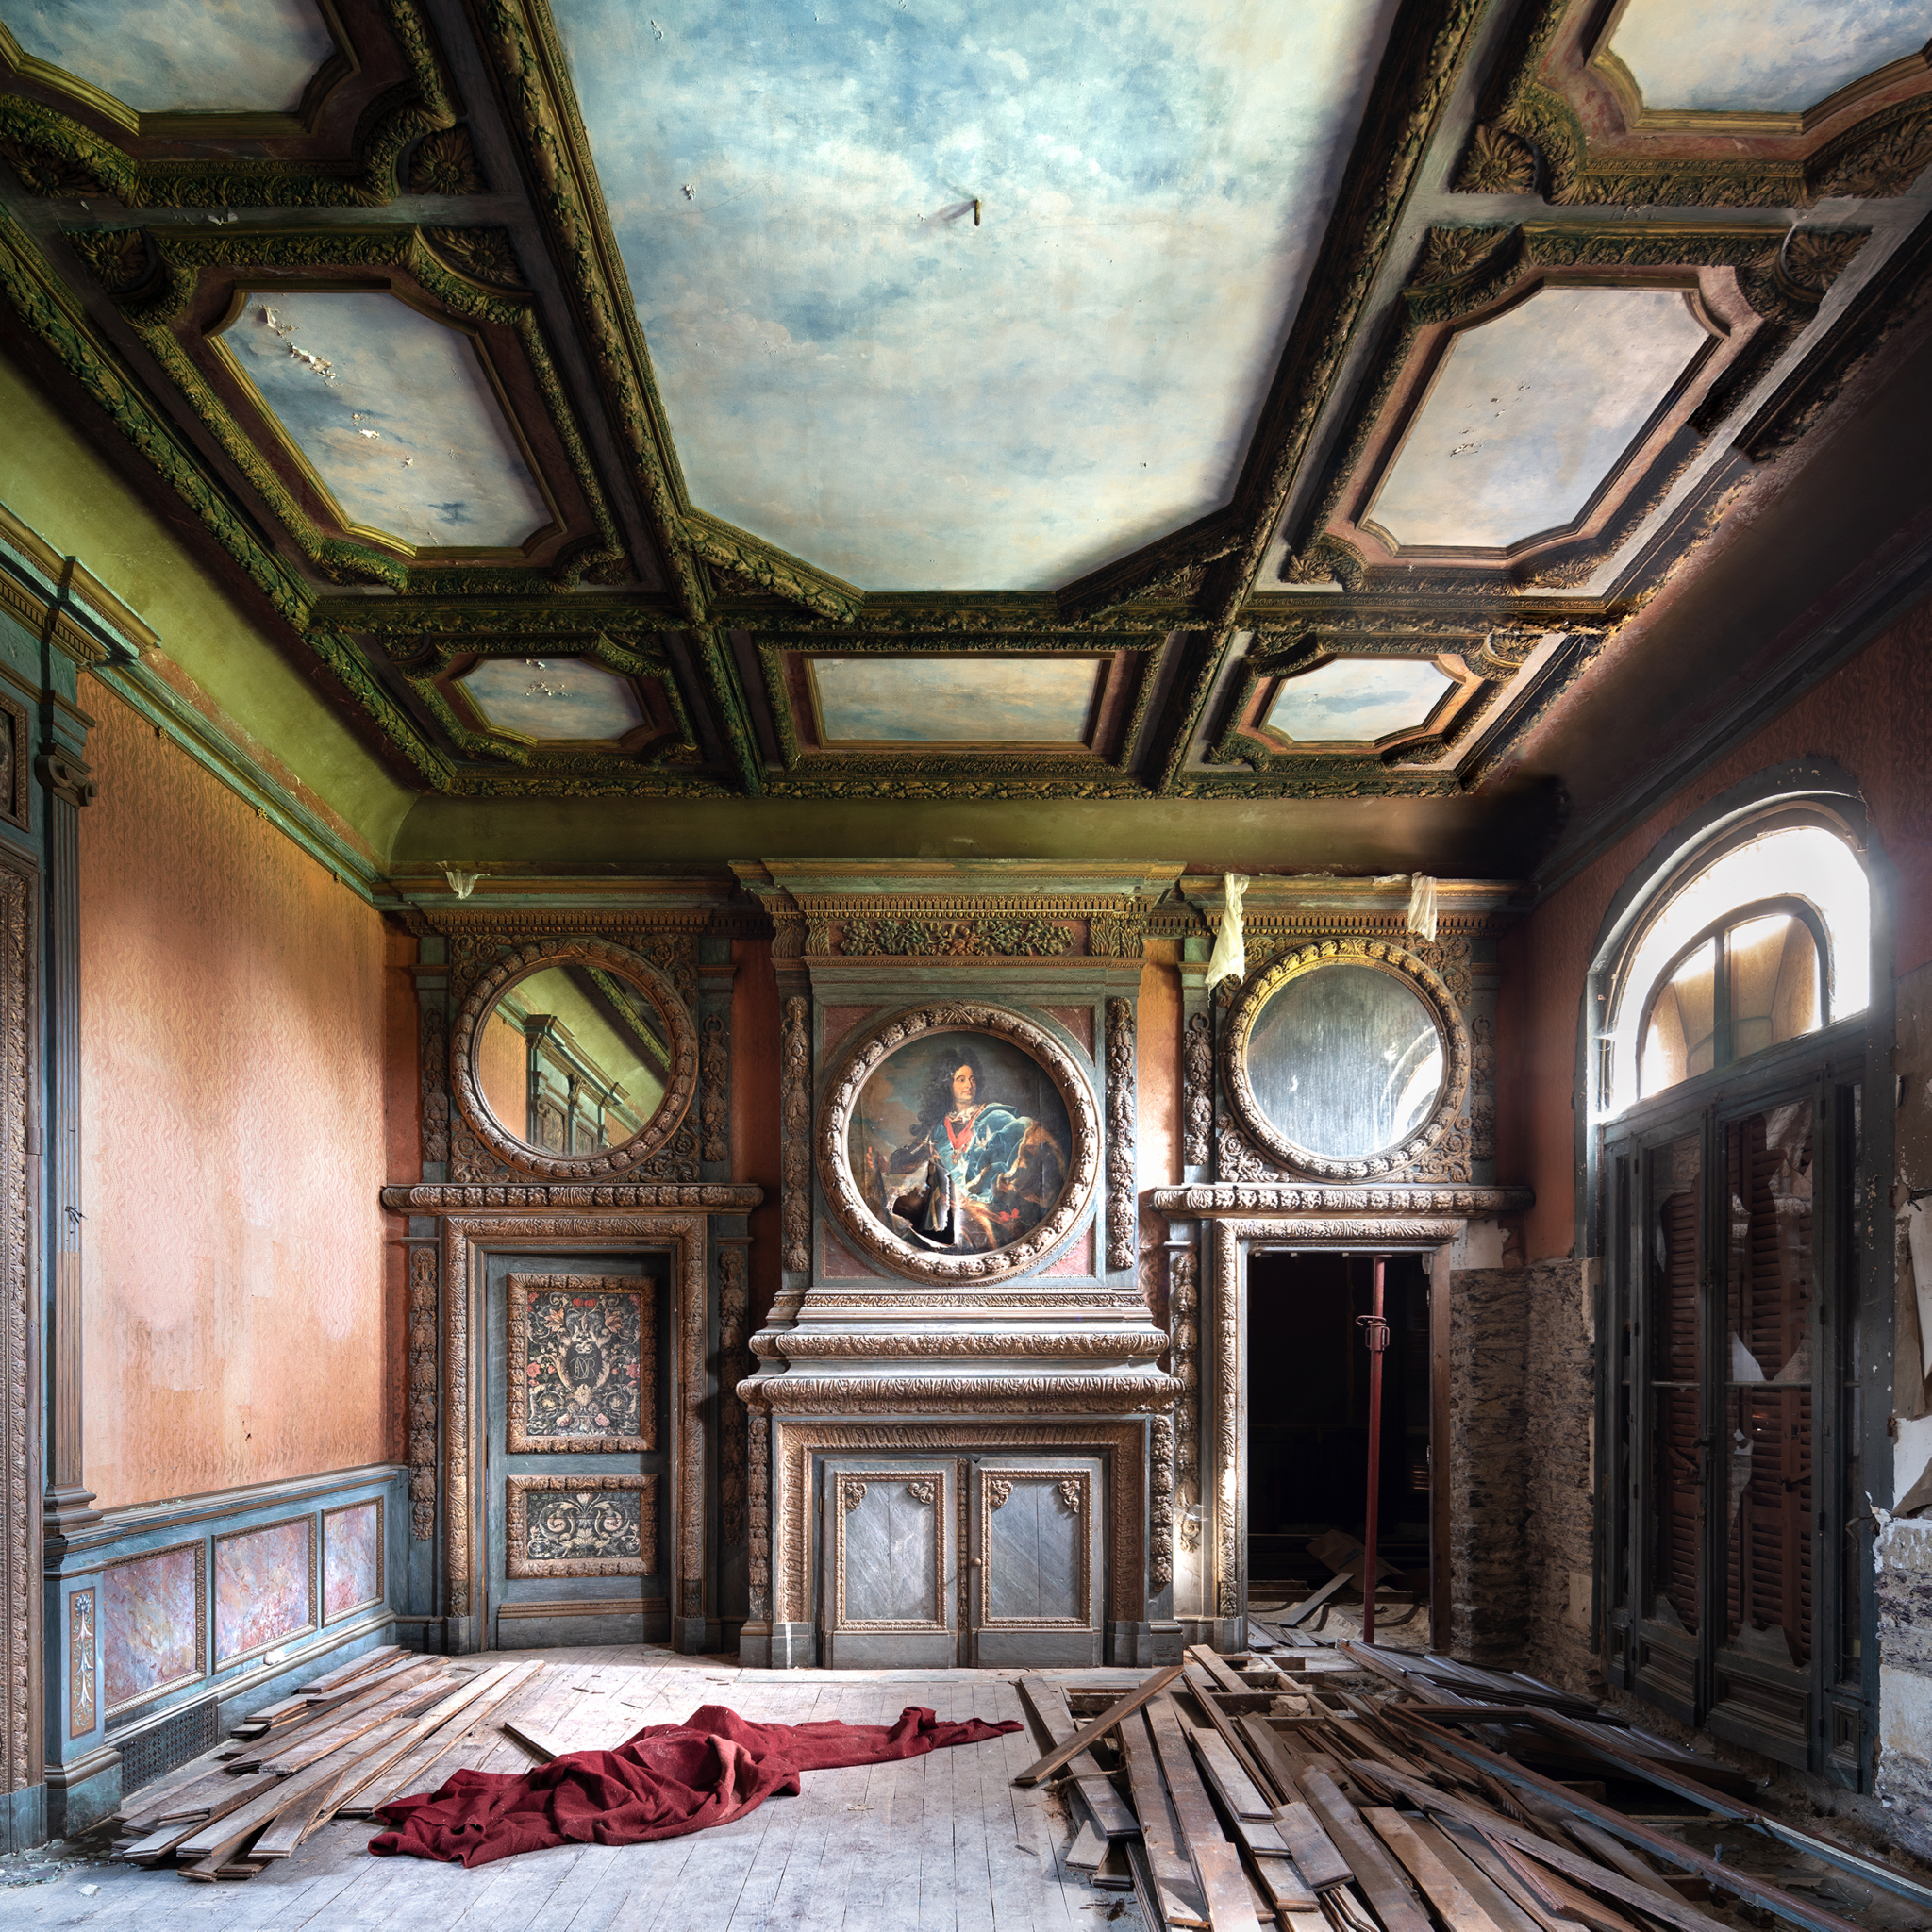 La Decadente Aristocrazia - Abandoned castle in France